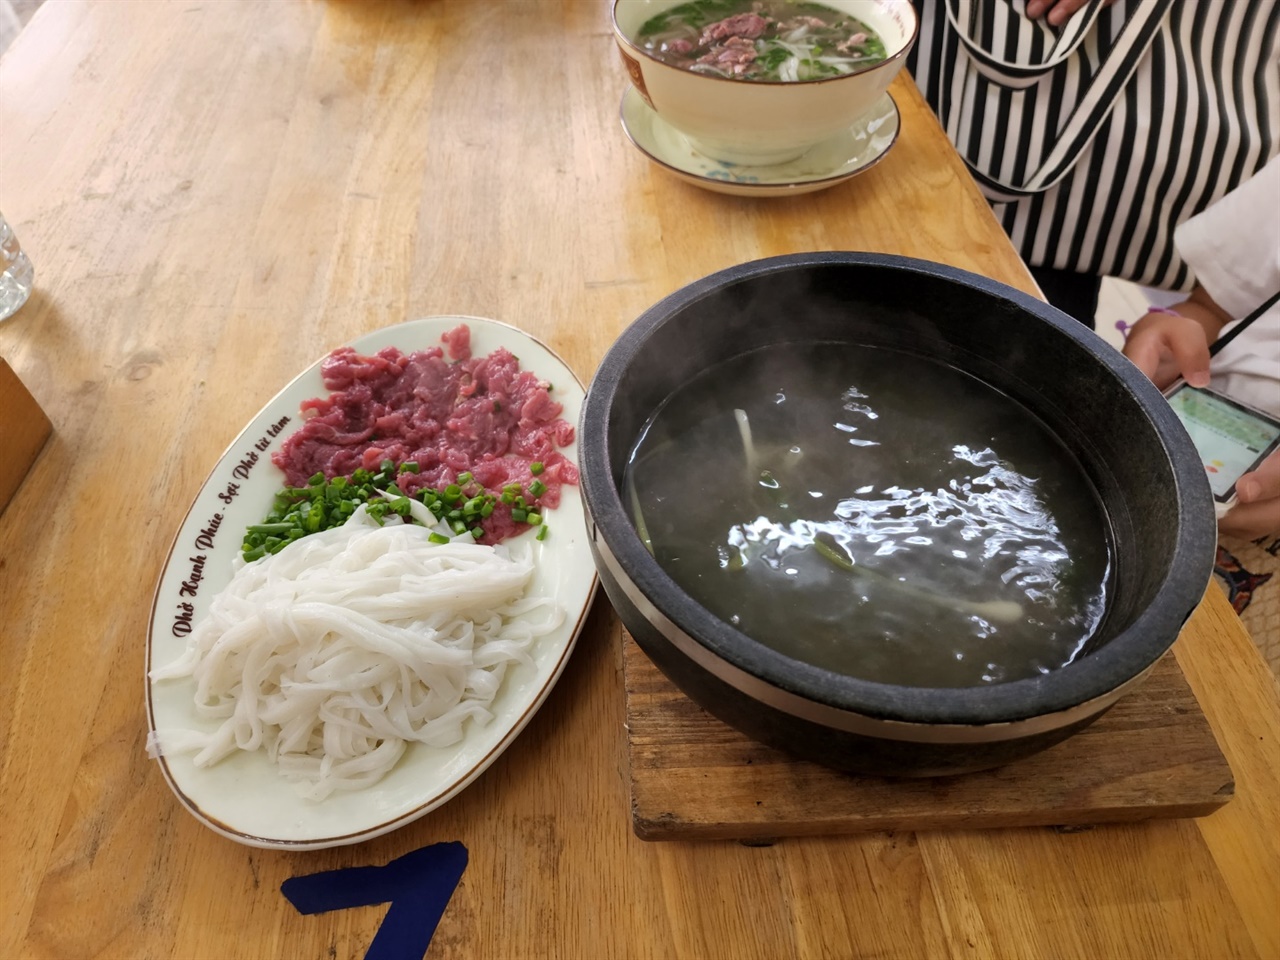 육수가 끓여져 나온 뚝배기에 고기와 면을 넣어 먹는 뚝배기 쌀국수는 한국인의 입맛에도 알맞다.